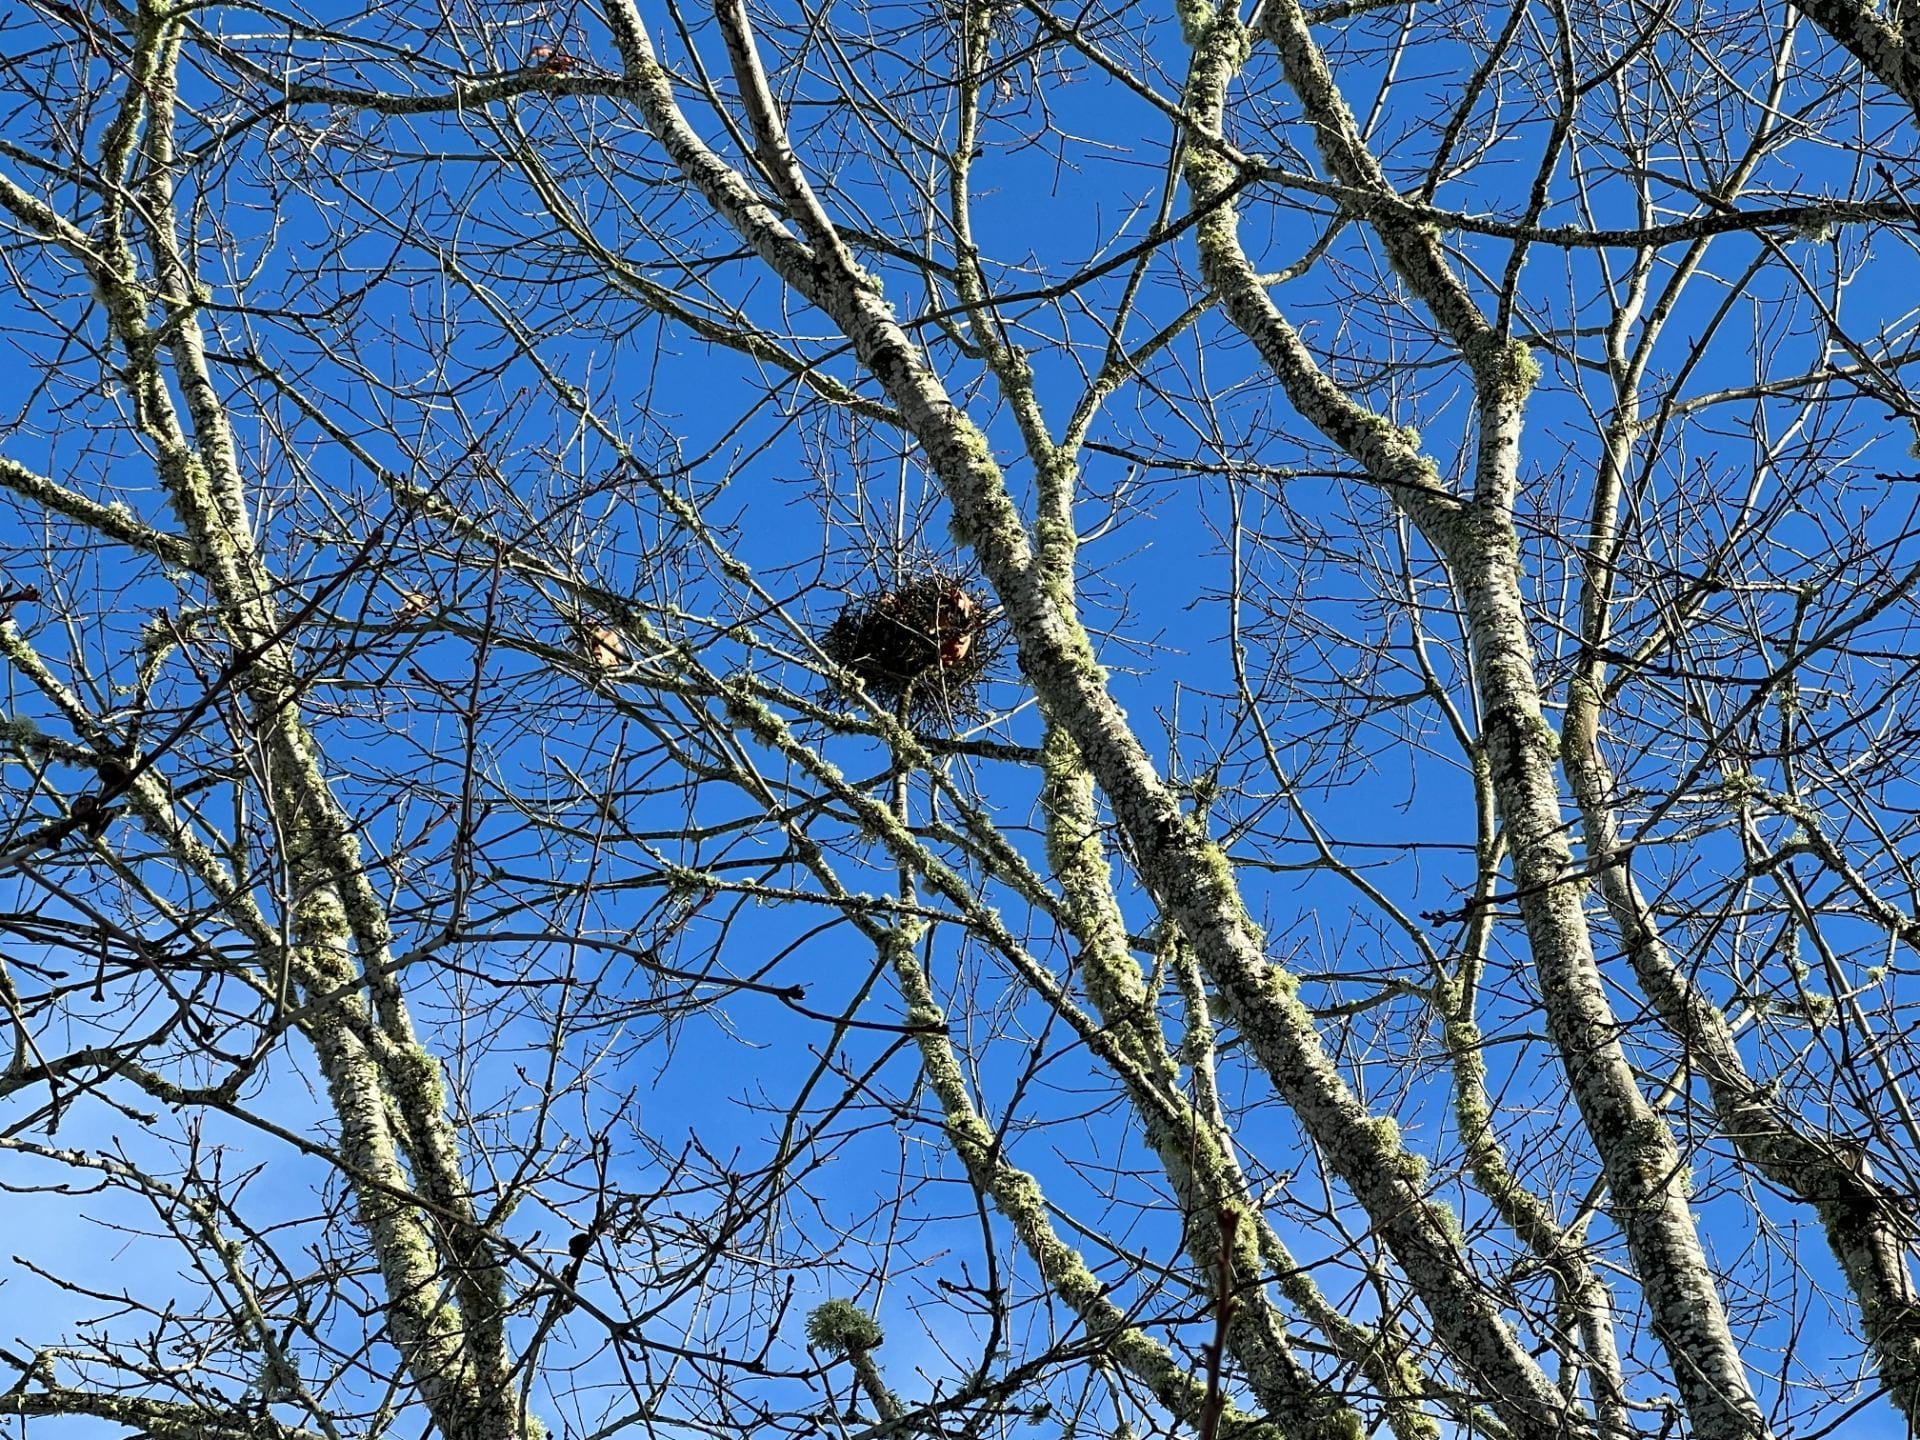 bird nest in bare trees